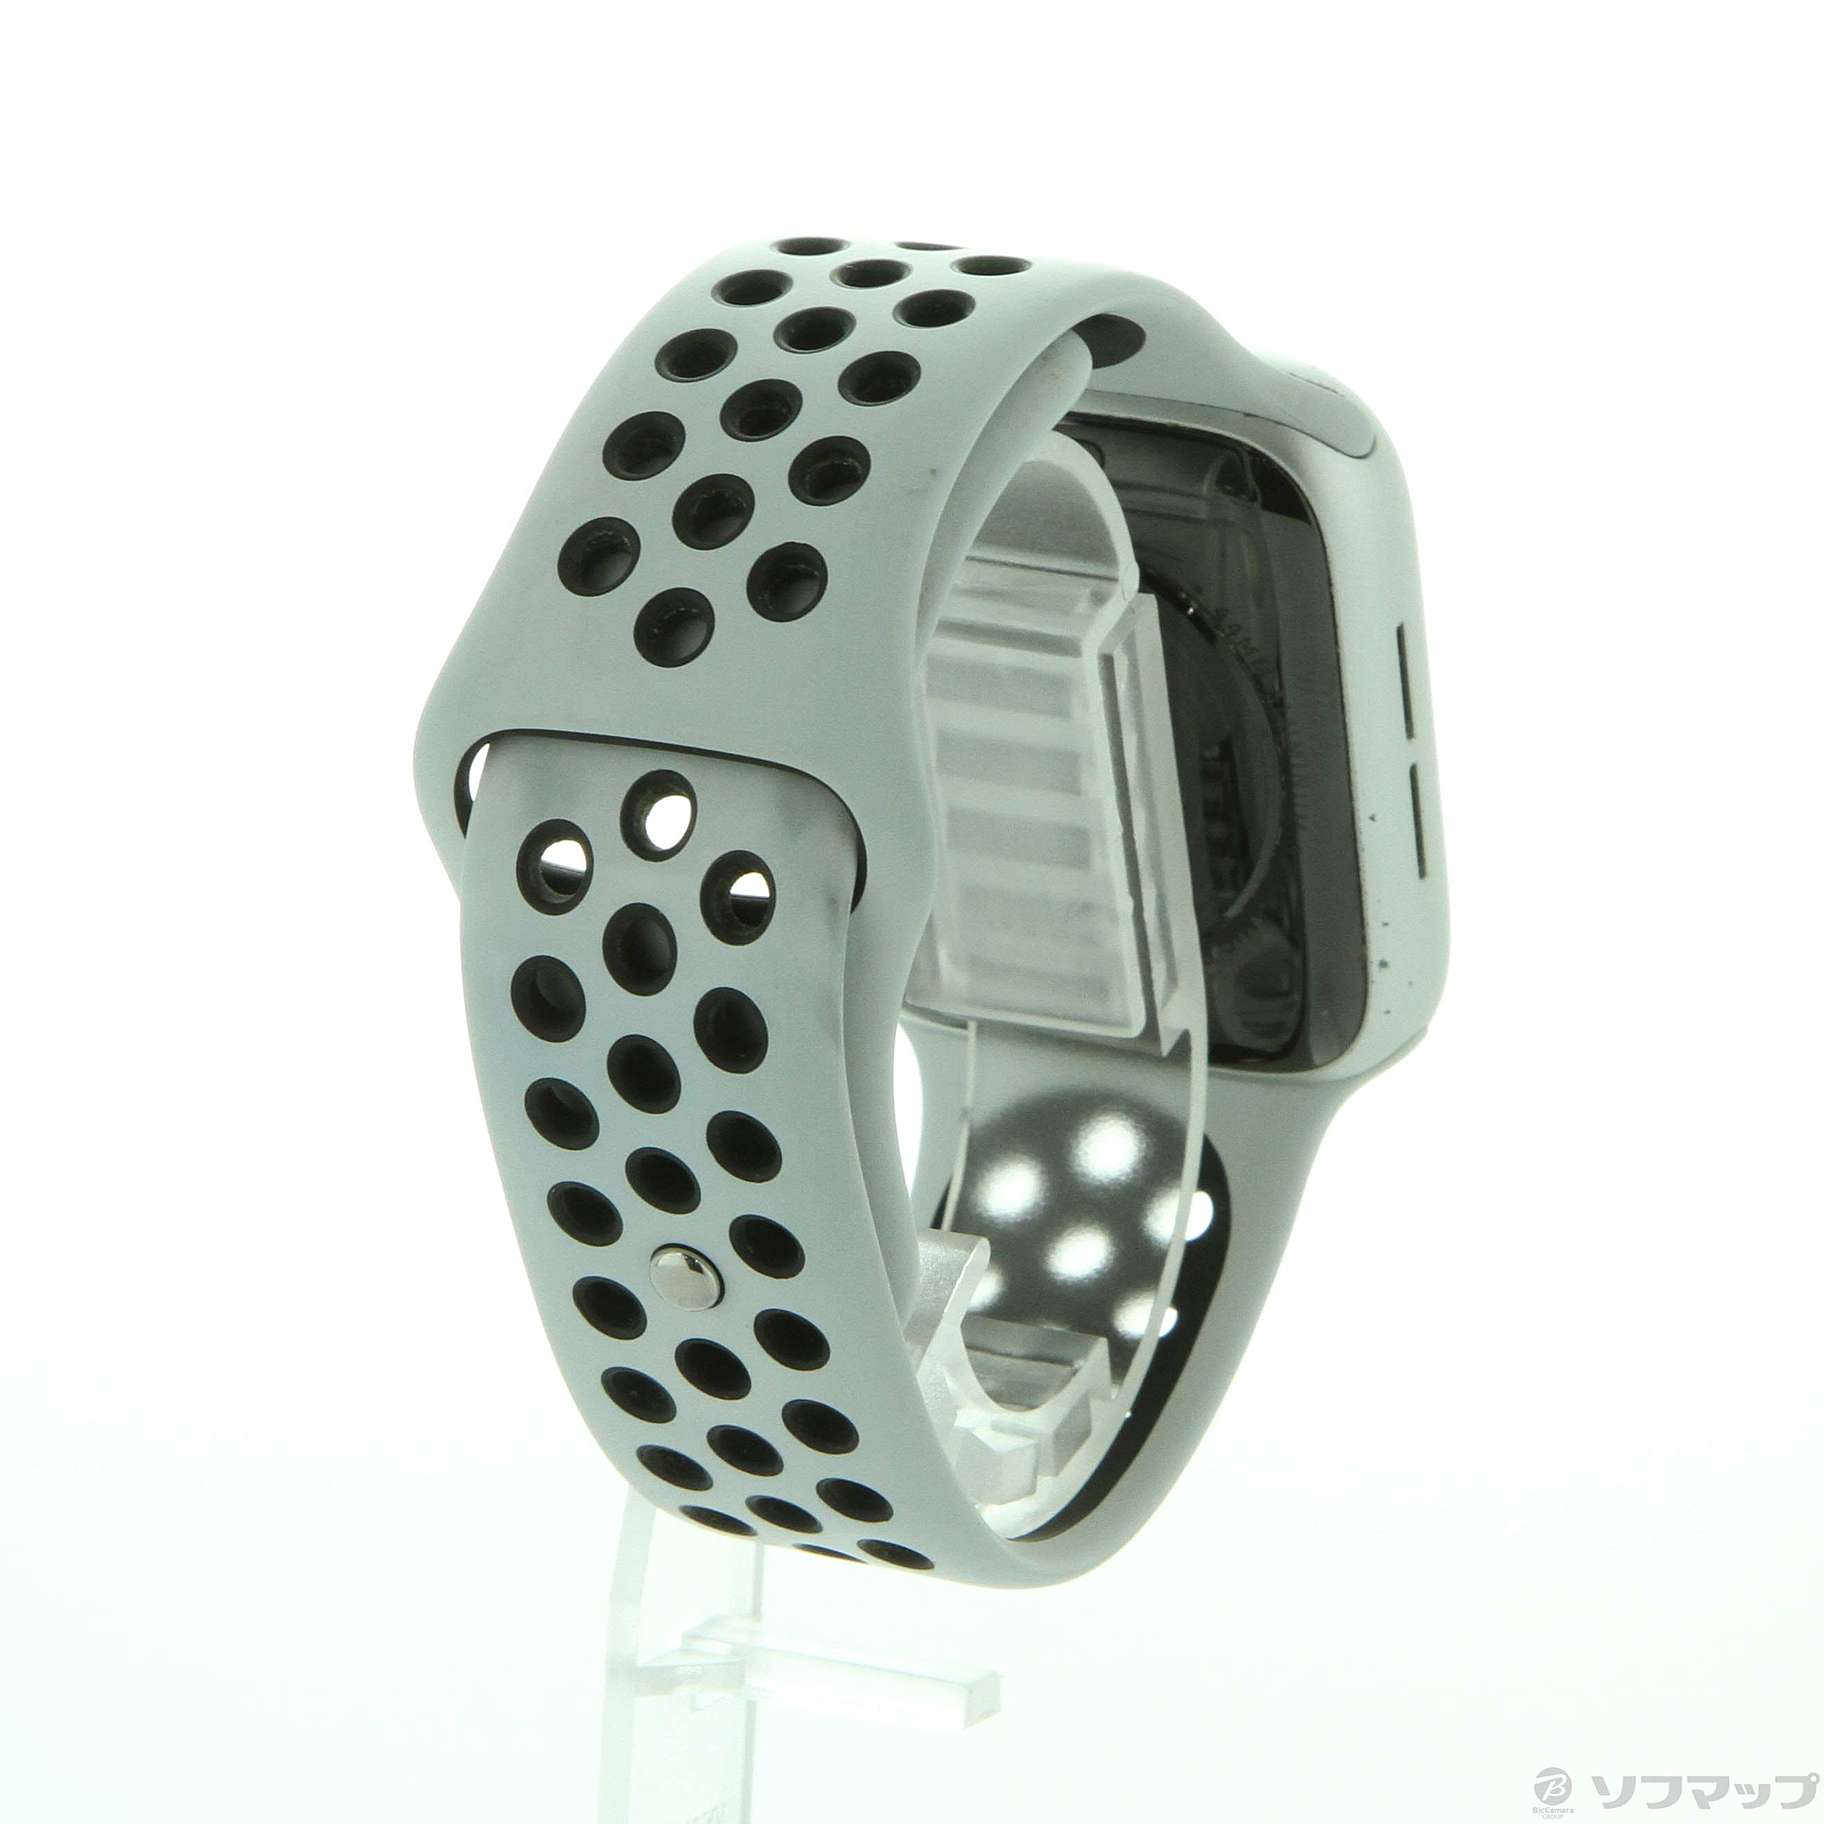 中古】Apple Watch SE 第1世代 Nike GPS 44mm シルバーアルミニウム 